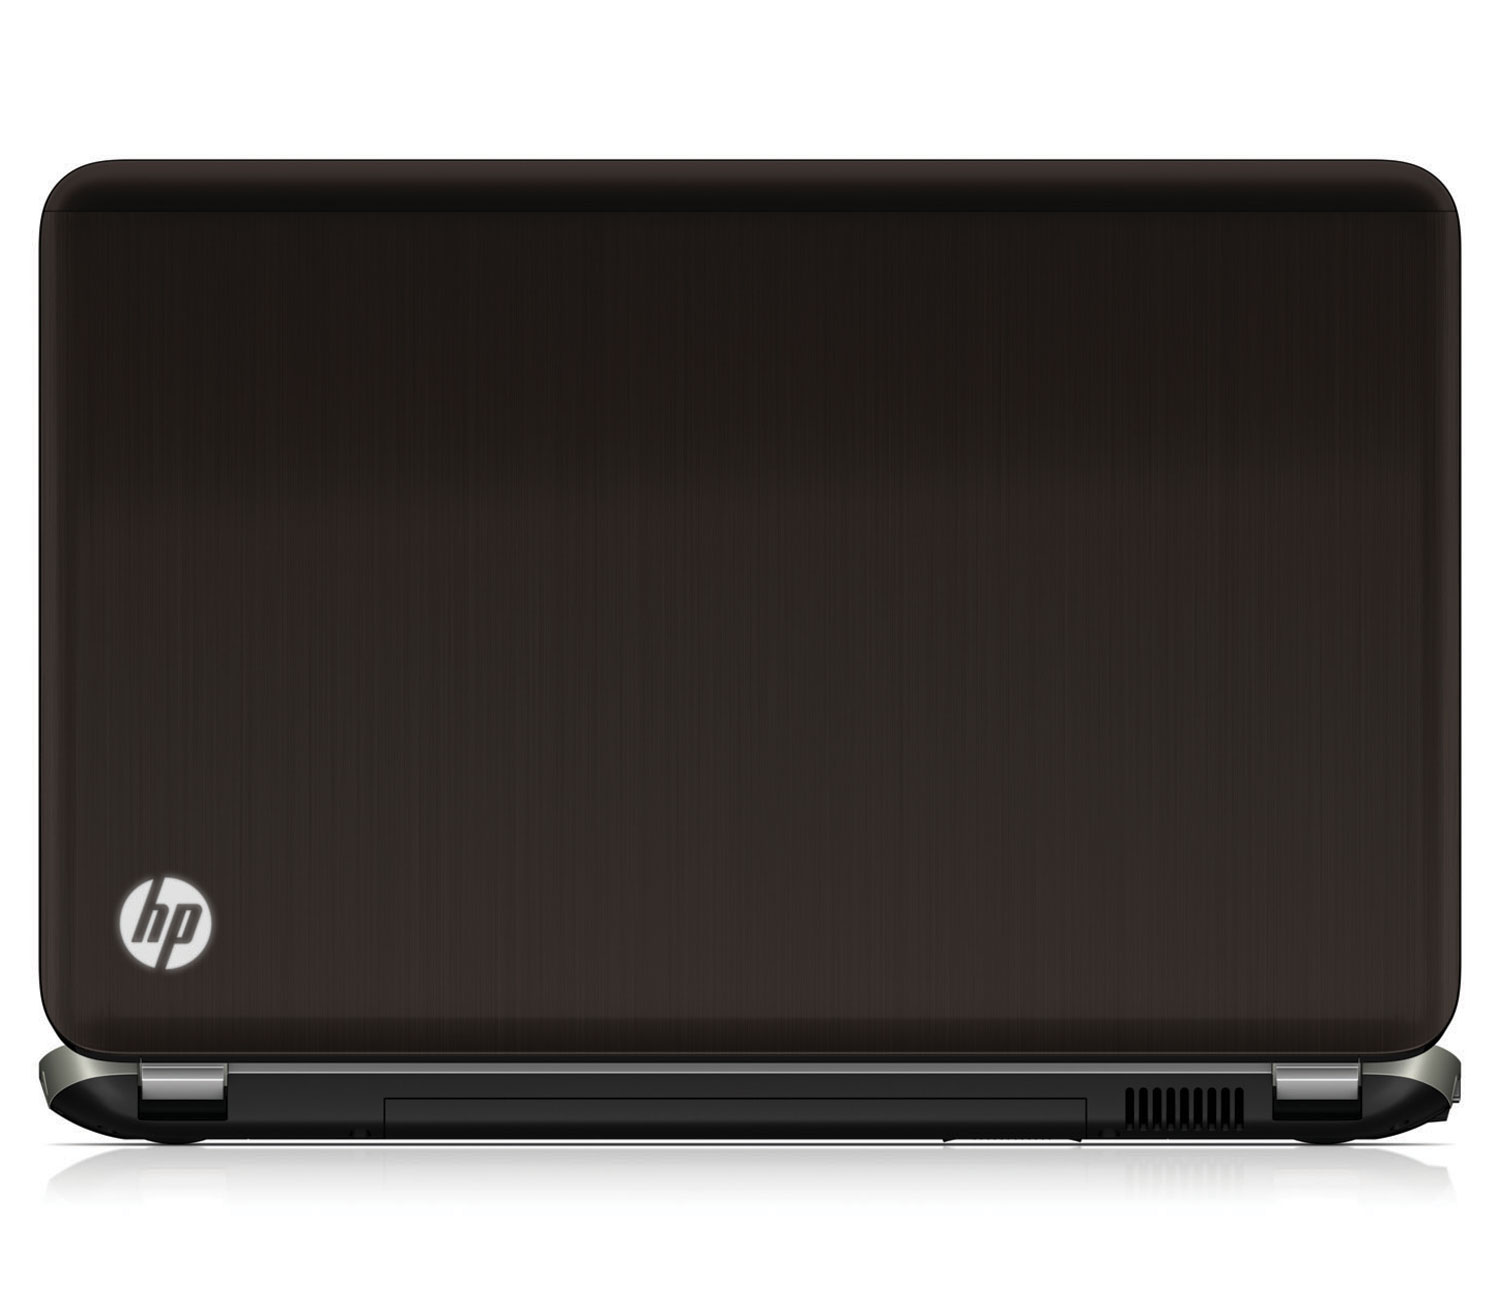 HP DV7-6c00TX i7 full HD Laptop. 01723722766 large image 0